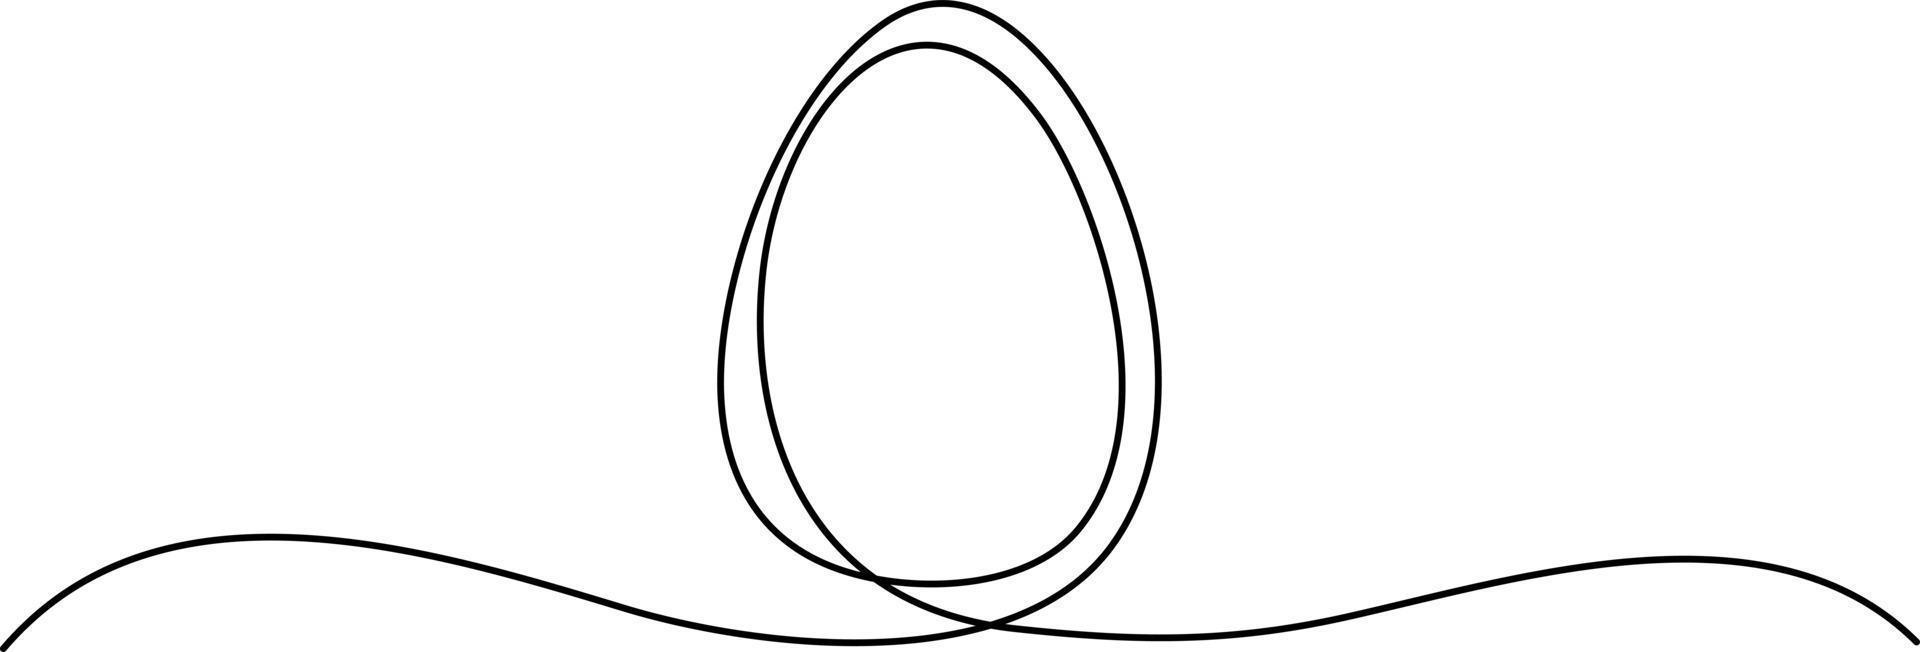 ägget dras av en kontinuerlig linje, påskvykortsdesign. egg line art, kontinuerlig en rad ritning av hela ägg i skal. designelement för påskhelgen. en rad vektorillustration. vektor